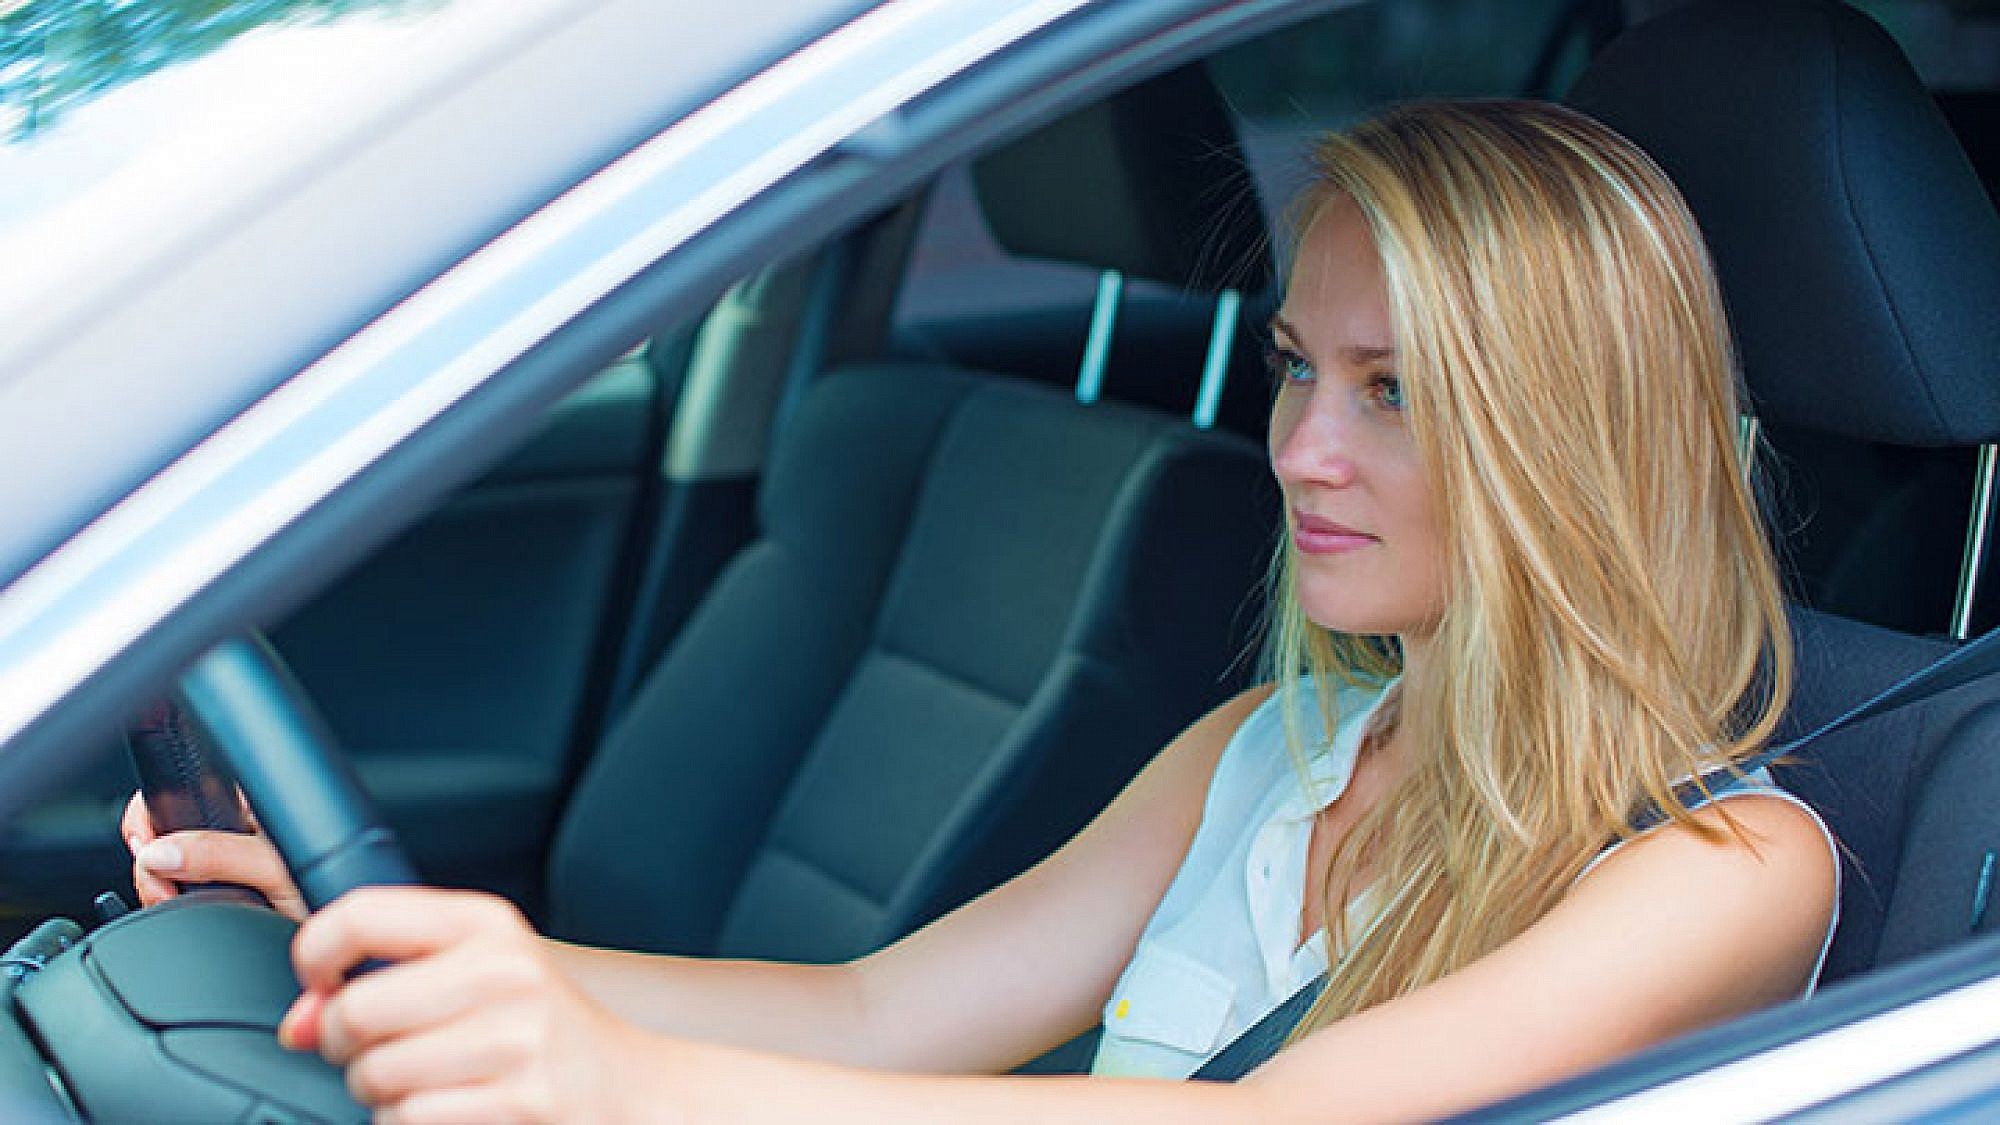 נשים נוהגות טוב יותר מגברים | צילום: Shutterstock